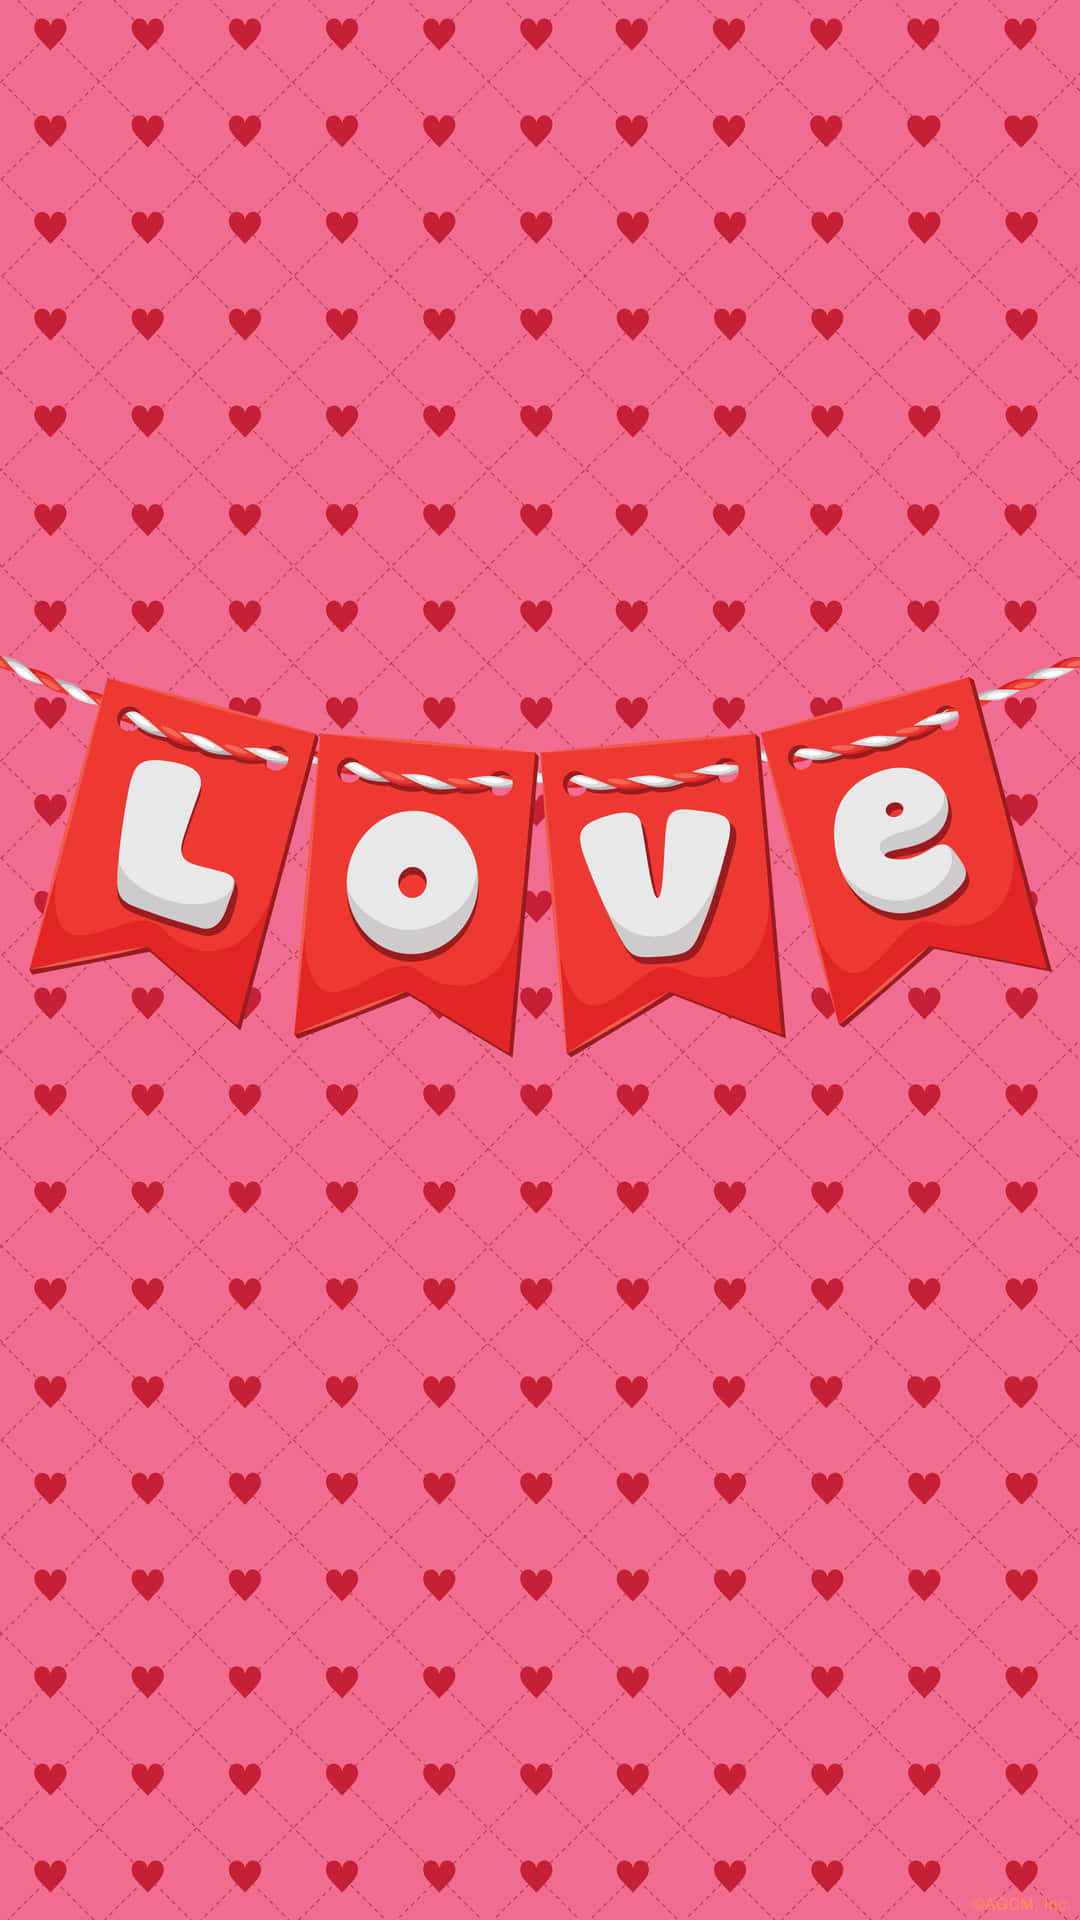 Fondode Pantalla De San Valentín Para El Celular En Tonos Rosados De Amor. Fondo de pantalla